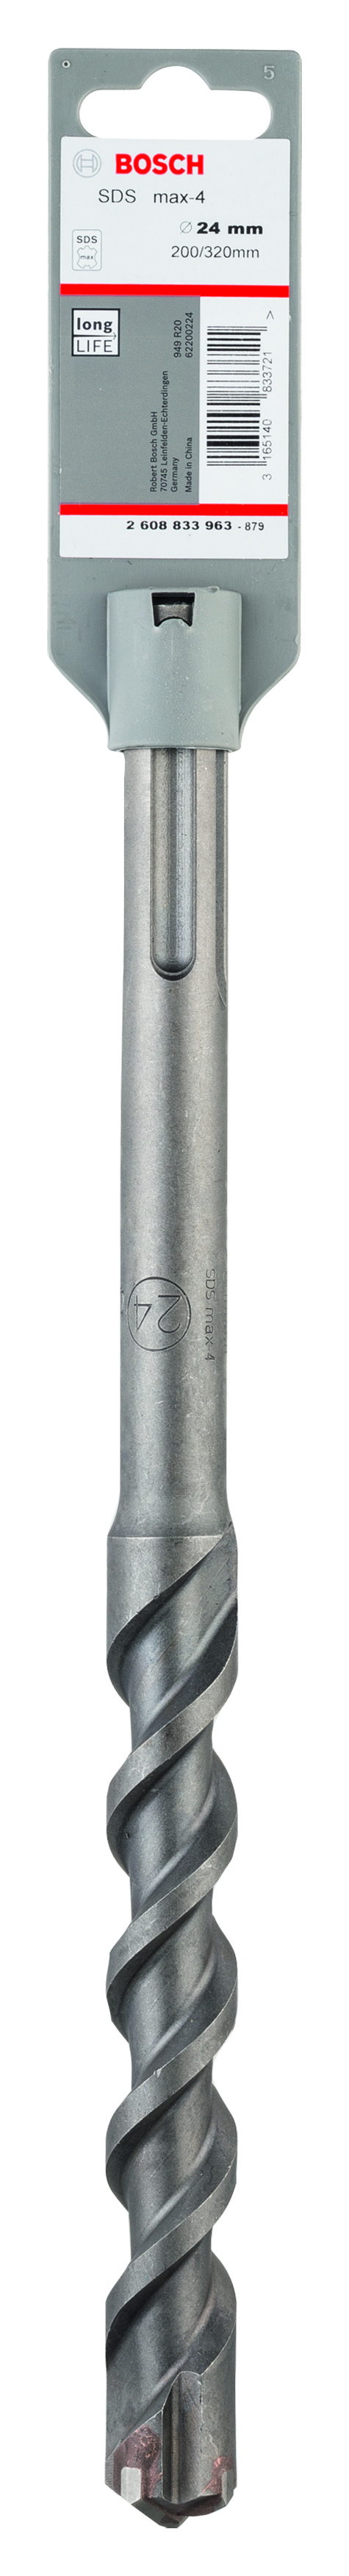 Bosch SDS-Max-4 Hammer Drill Bit 24mm x 200mm x 320mm